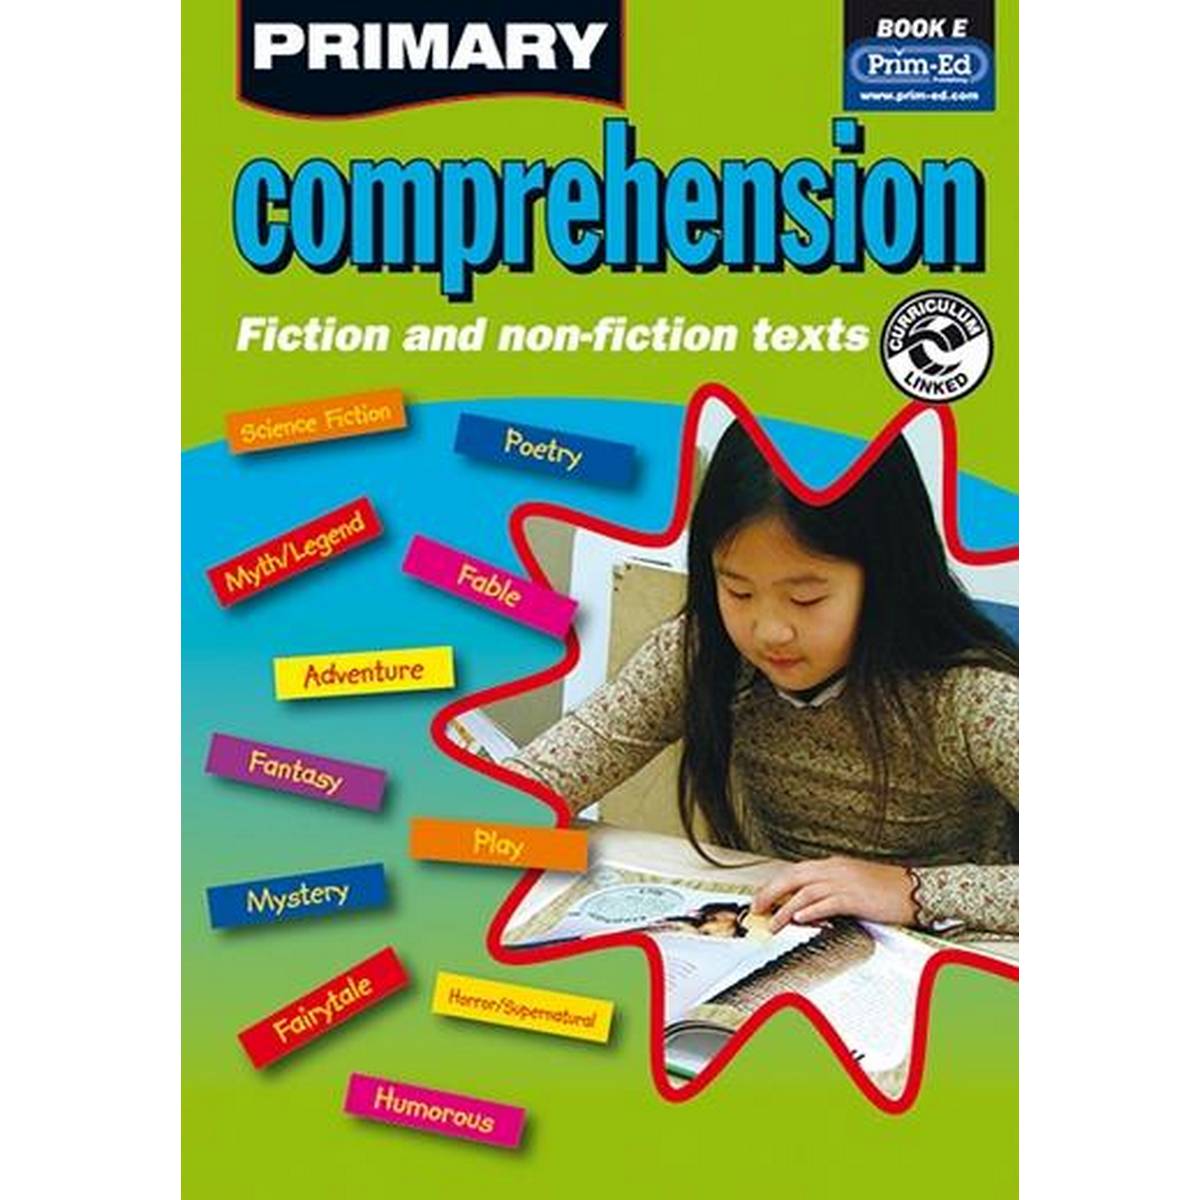 PRIMARY COMPREHENSION BOOK E